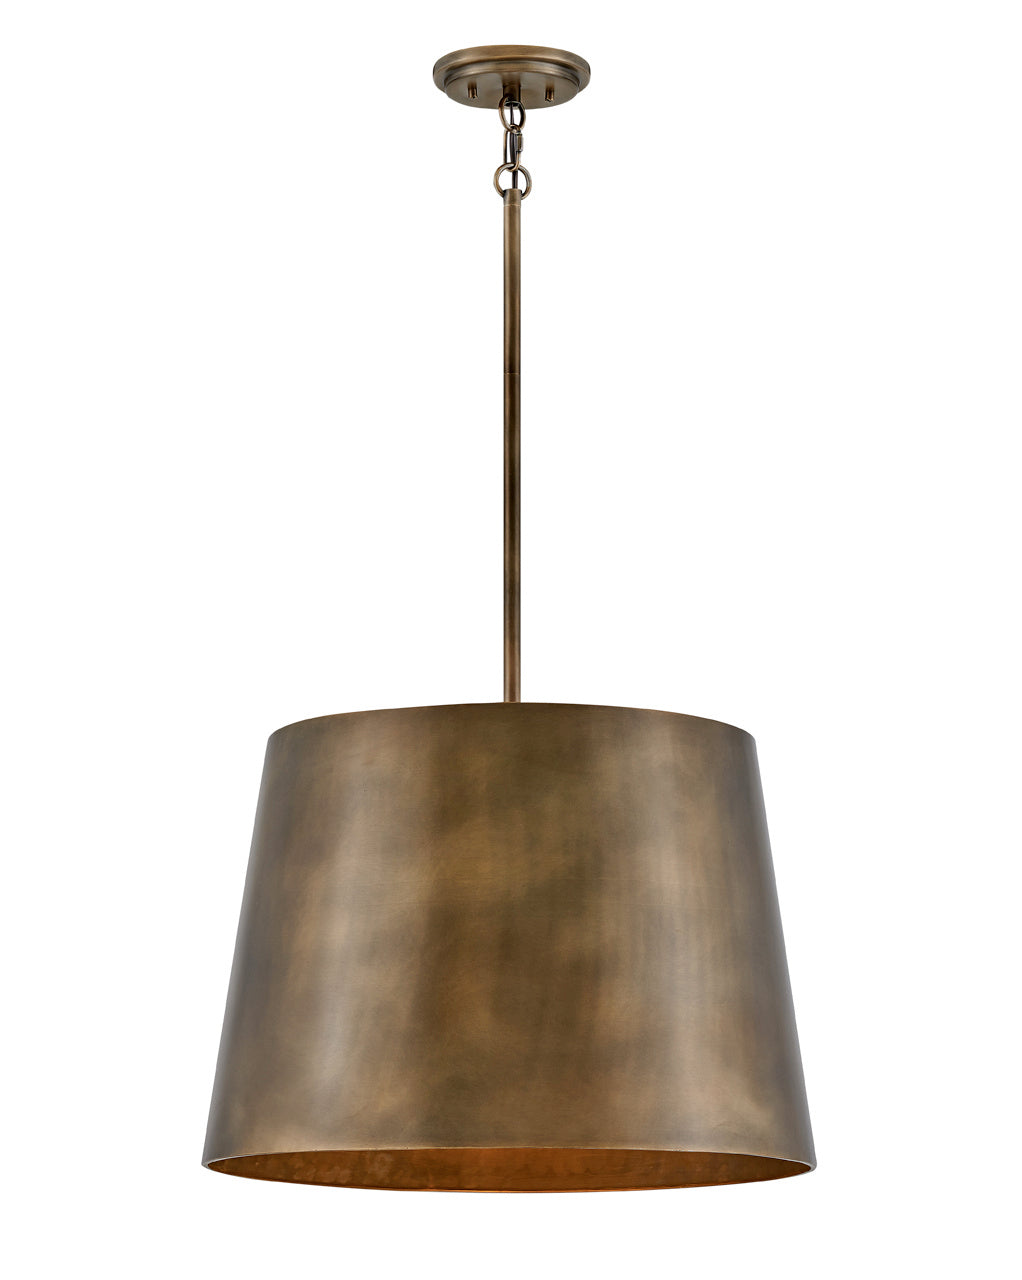 Hinkley Canada - LED Pendant - Alder - Burnished Bronze- Union Lighting Luminaires Decor